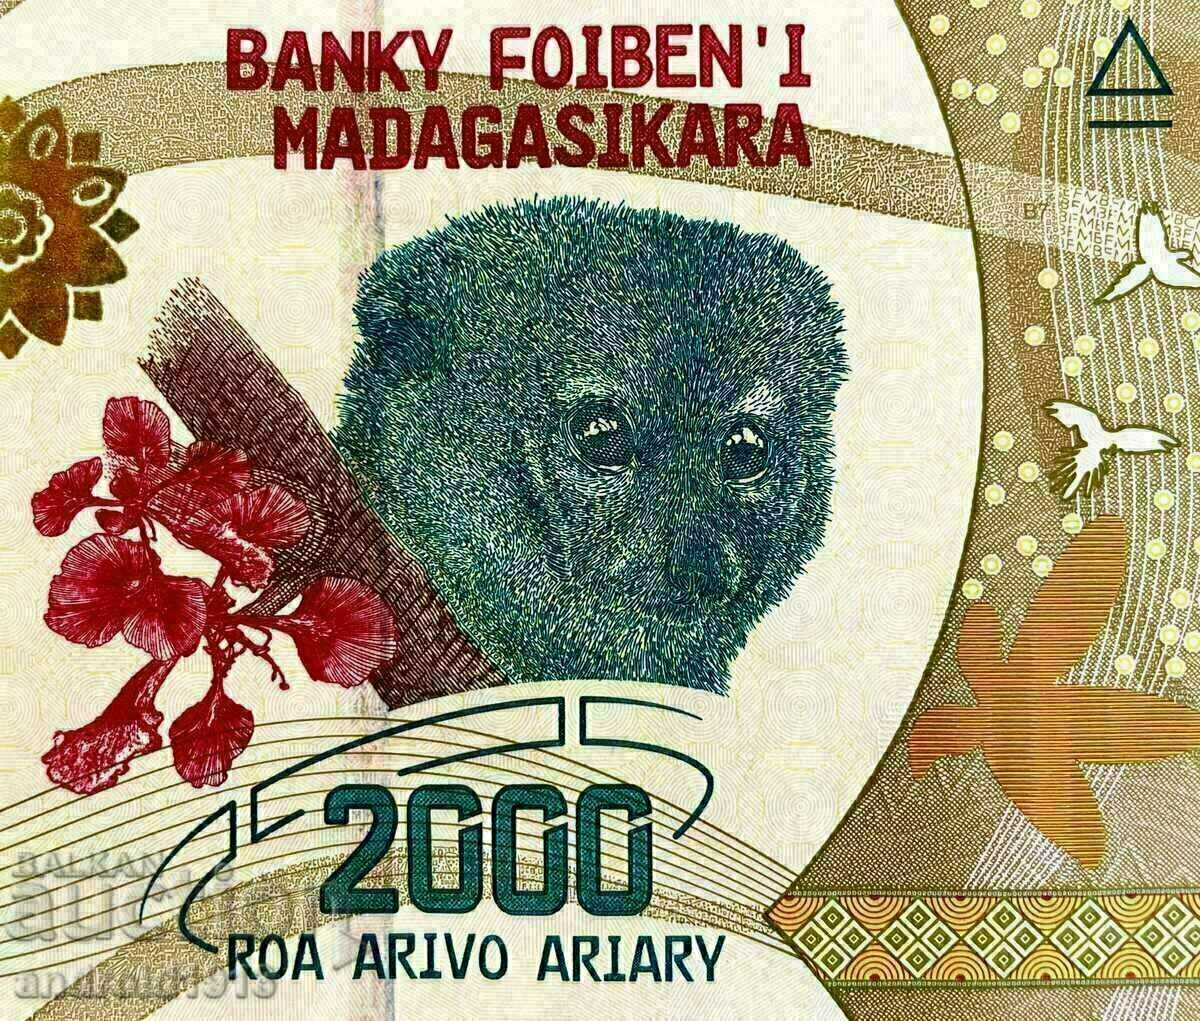 MADAGASCAR - PRET SUPERIOR!! 2000 ARIARY 2017, UNC